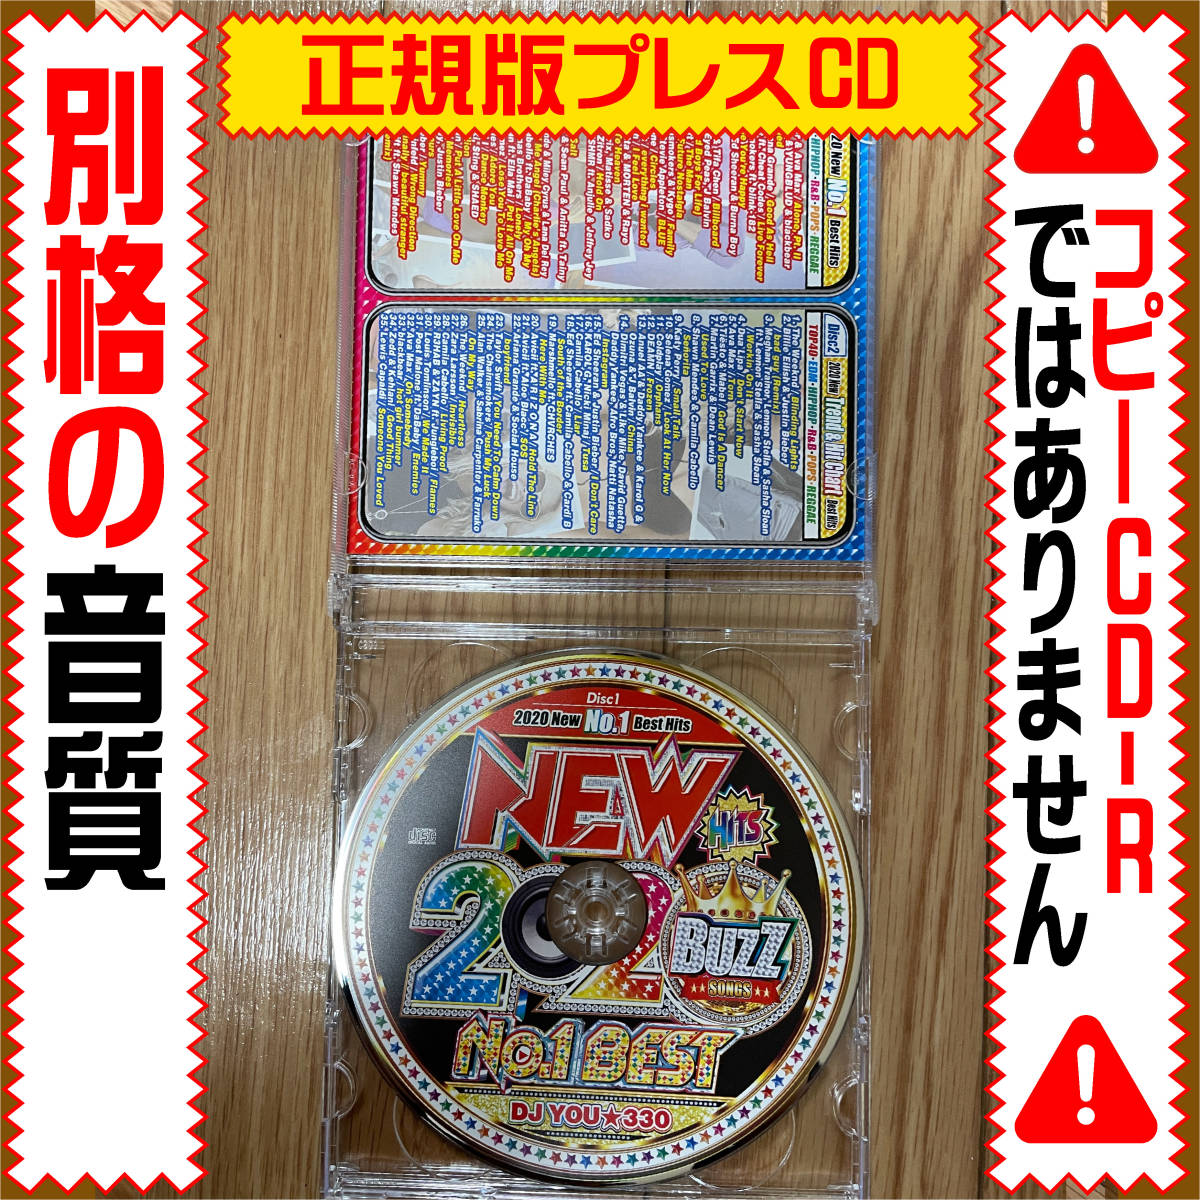 【洋楽Mix CD】超特価 2020 New No.1 Best正規版CD★DVD